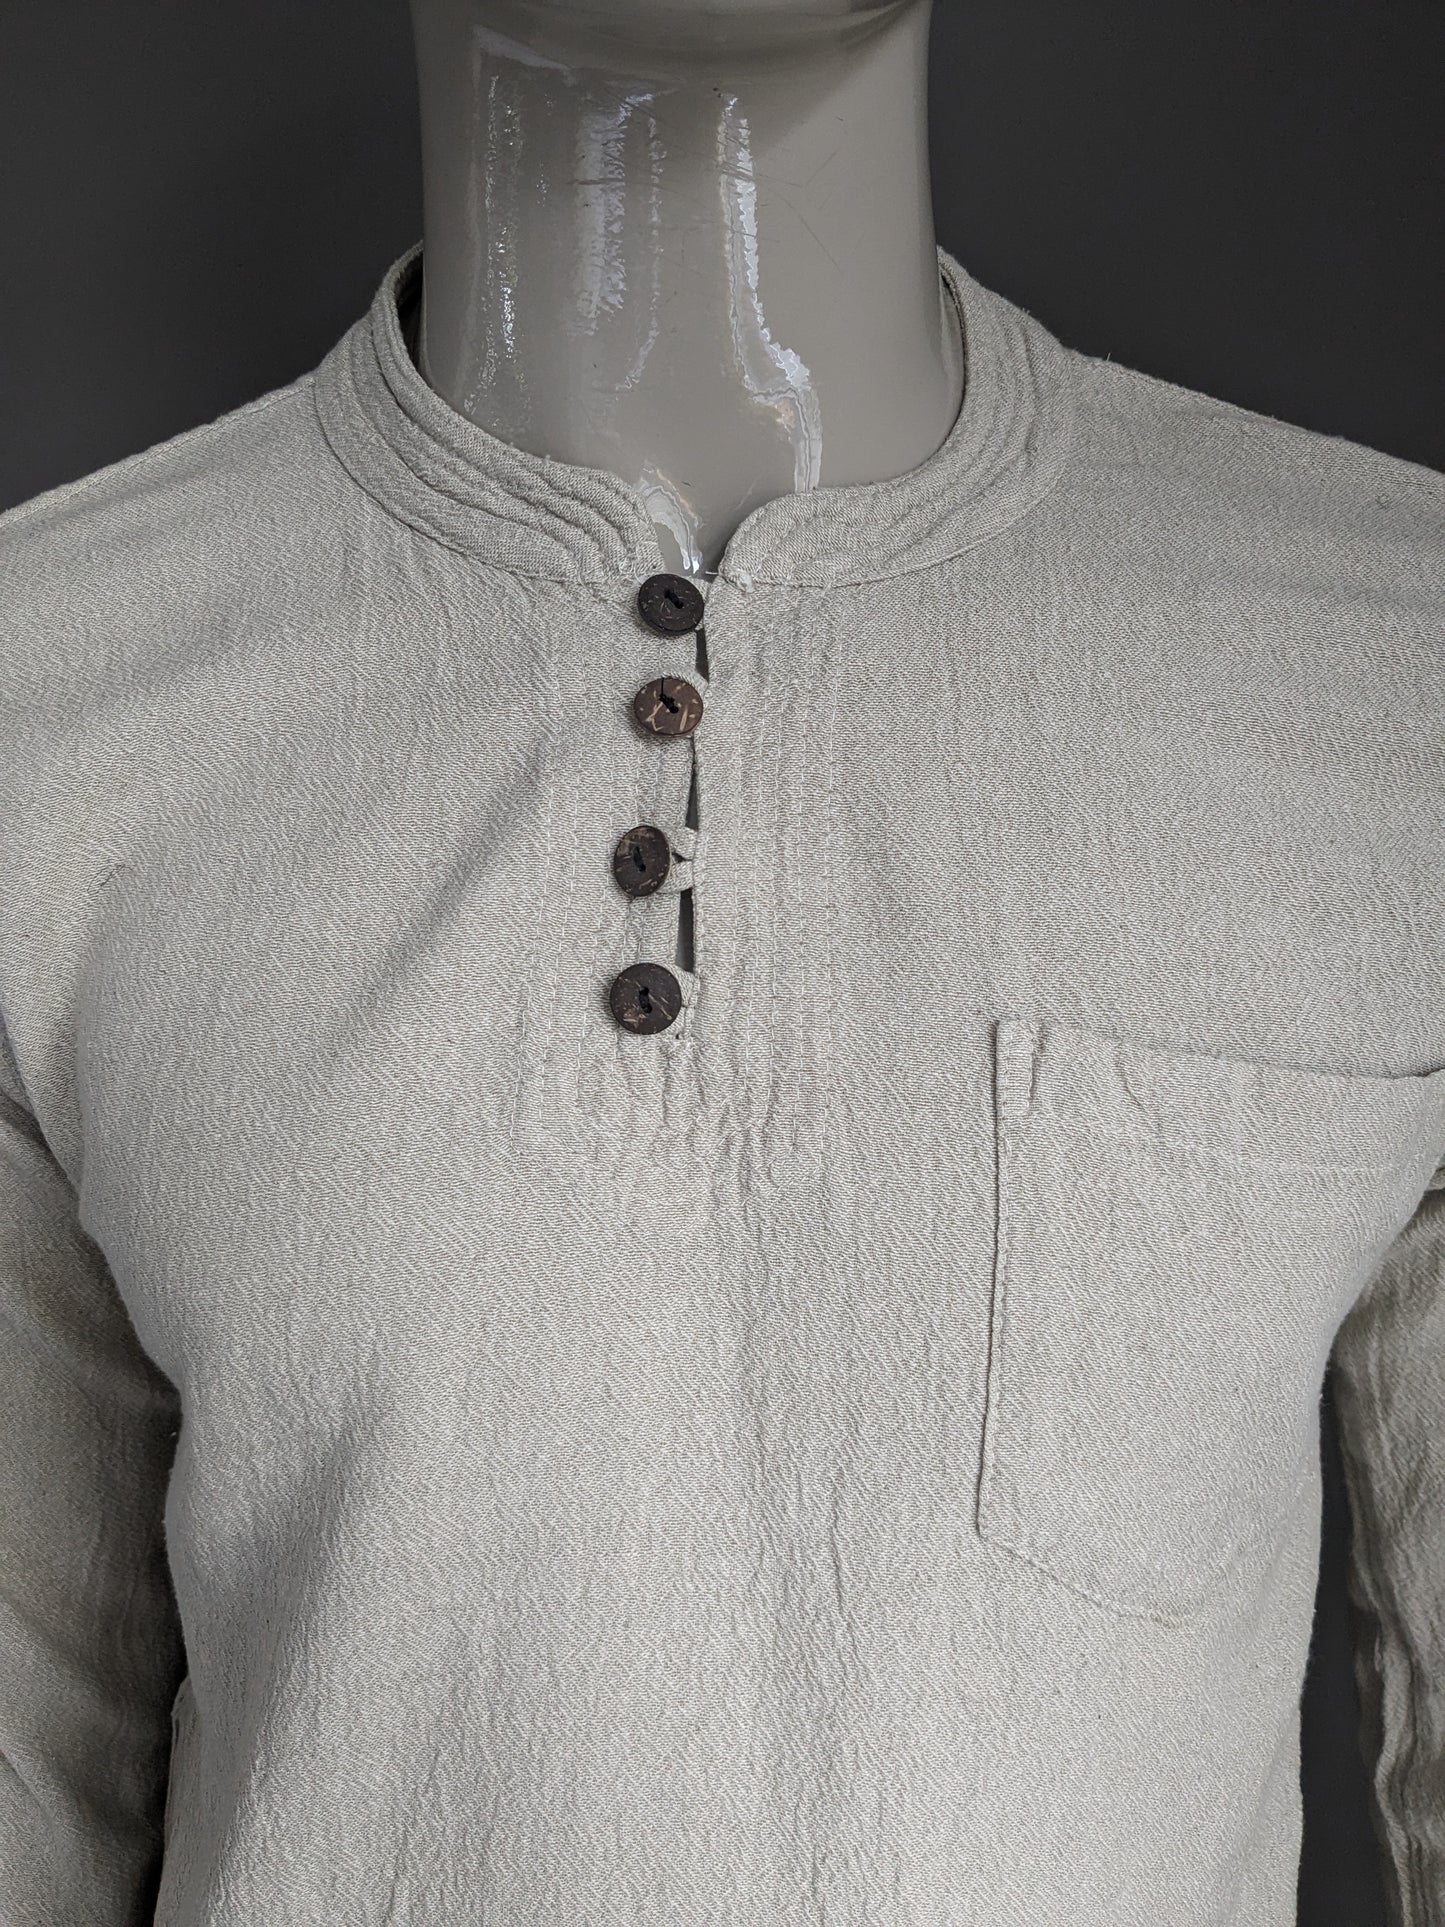 Camisa de gurú de la vintage con mao / granjeros y cuello elevado con 1 bolsa. Motivo beige. Talla M.